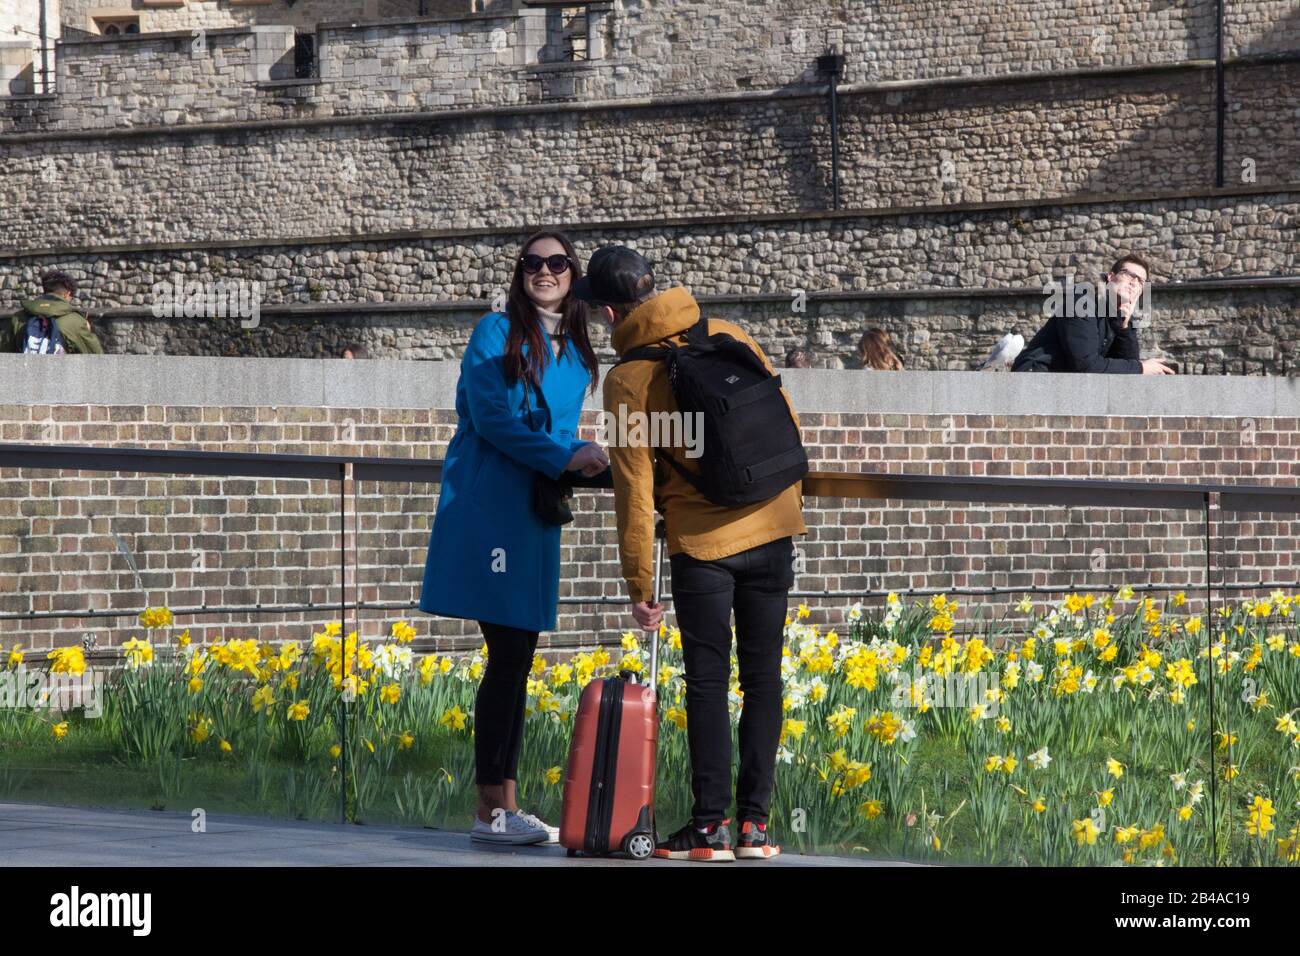 London, Großbritannien. März 2020. Touristen nutzten einen sonnigen Tag, um den Tower of London ohne Facemasken zu besuchen und zeigten eine "Business as usual"-Haltung gegenüber dem Corvid-19-Coronavirus. Anna Watson/Alamy Live News Stockfoto